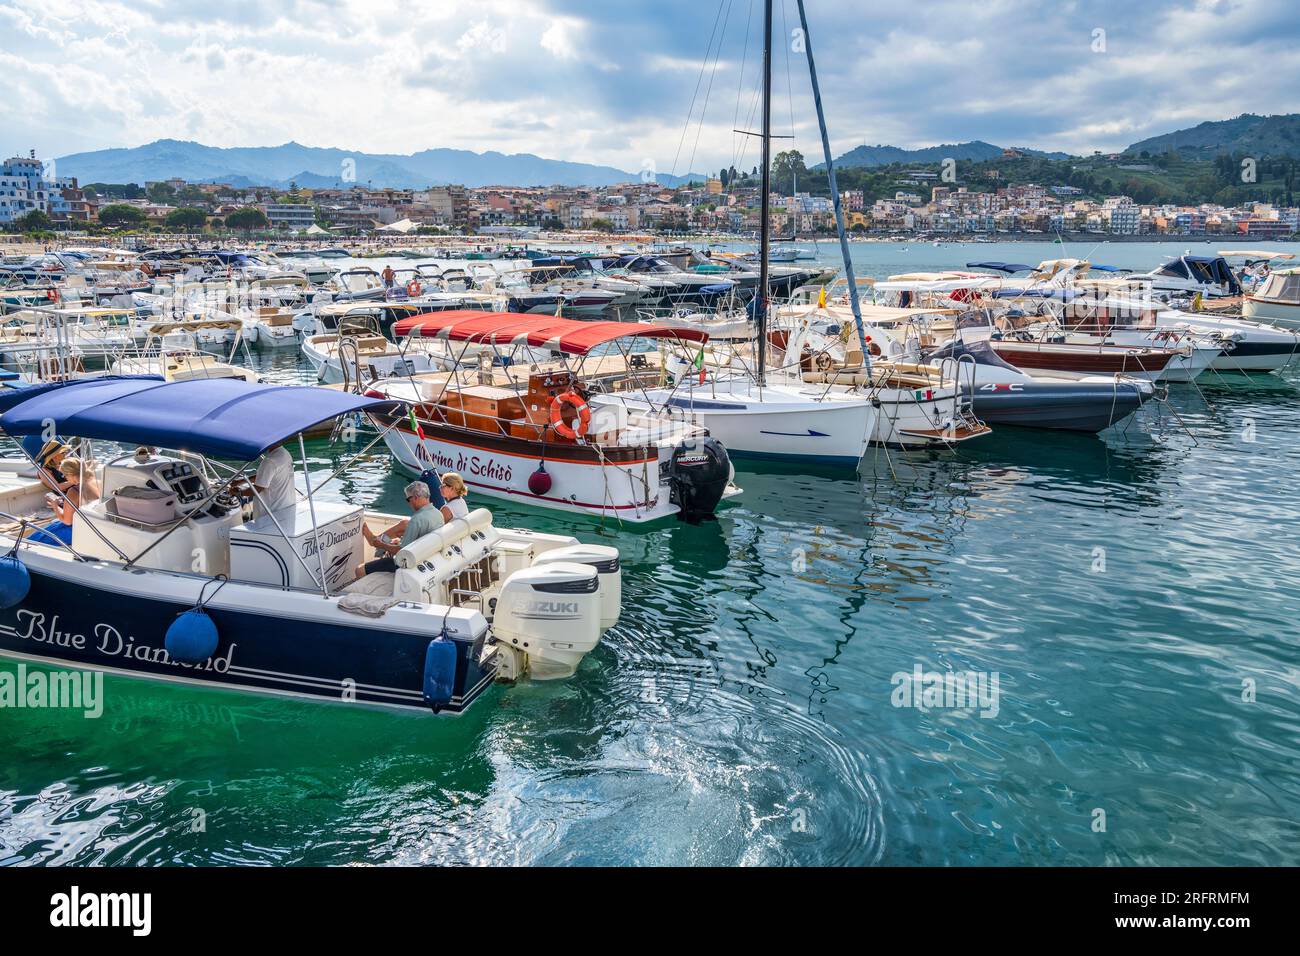 Boote in der Marina di Schiso in Giardini Naxos, einer beliebten Stadt und Resort südlich von Taormina in Sizilien, Italien Stockfoto